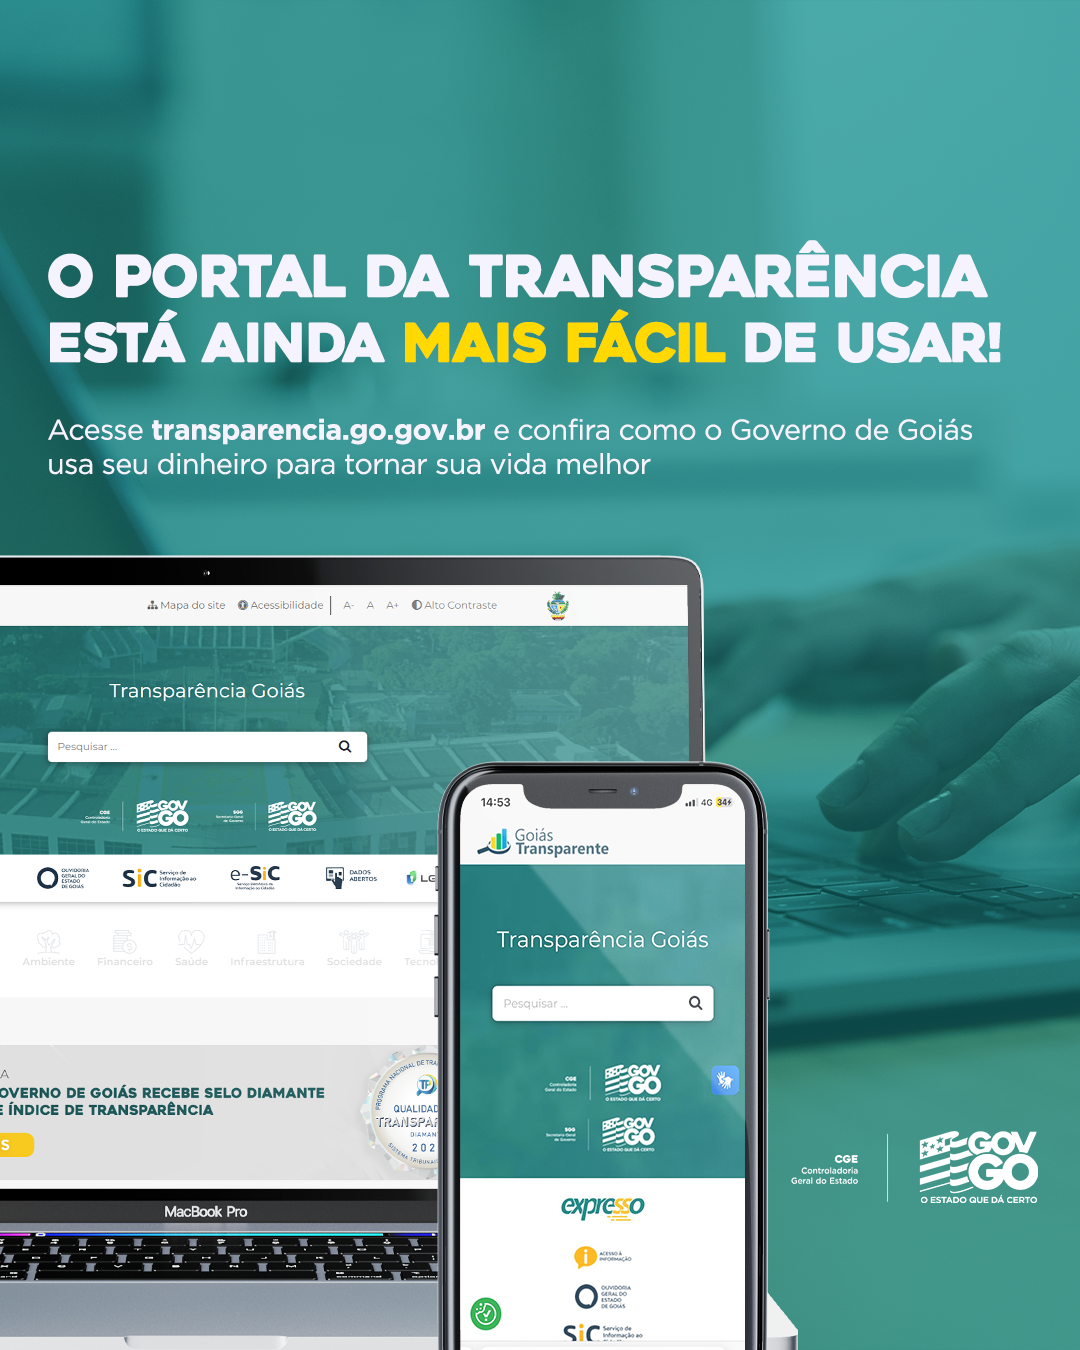 Já conhece o Novo Portal da Transparência?